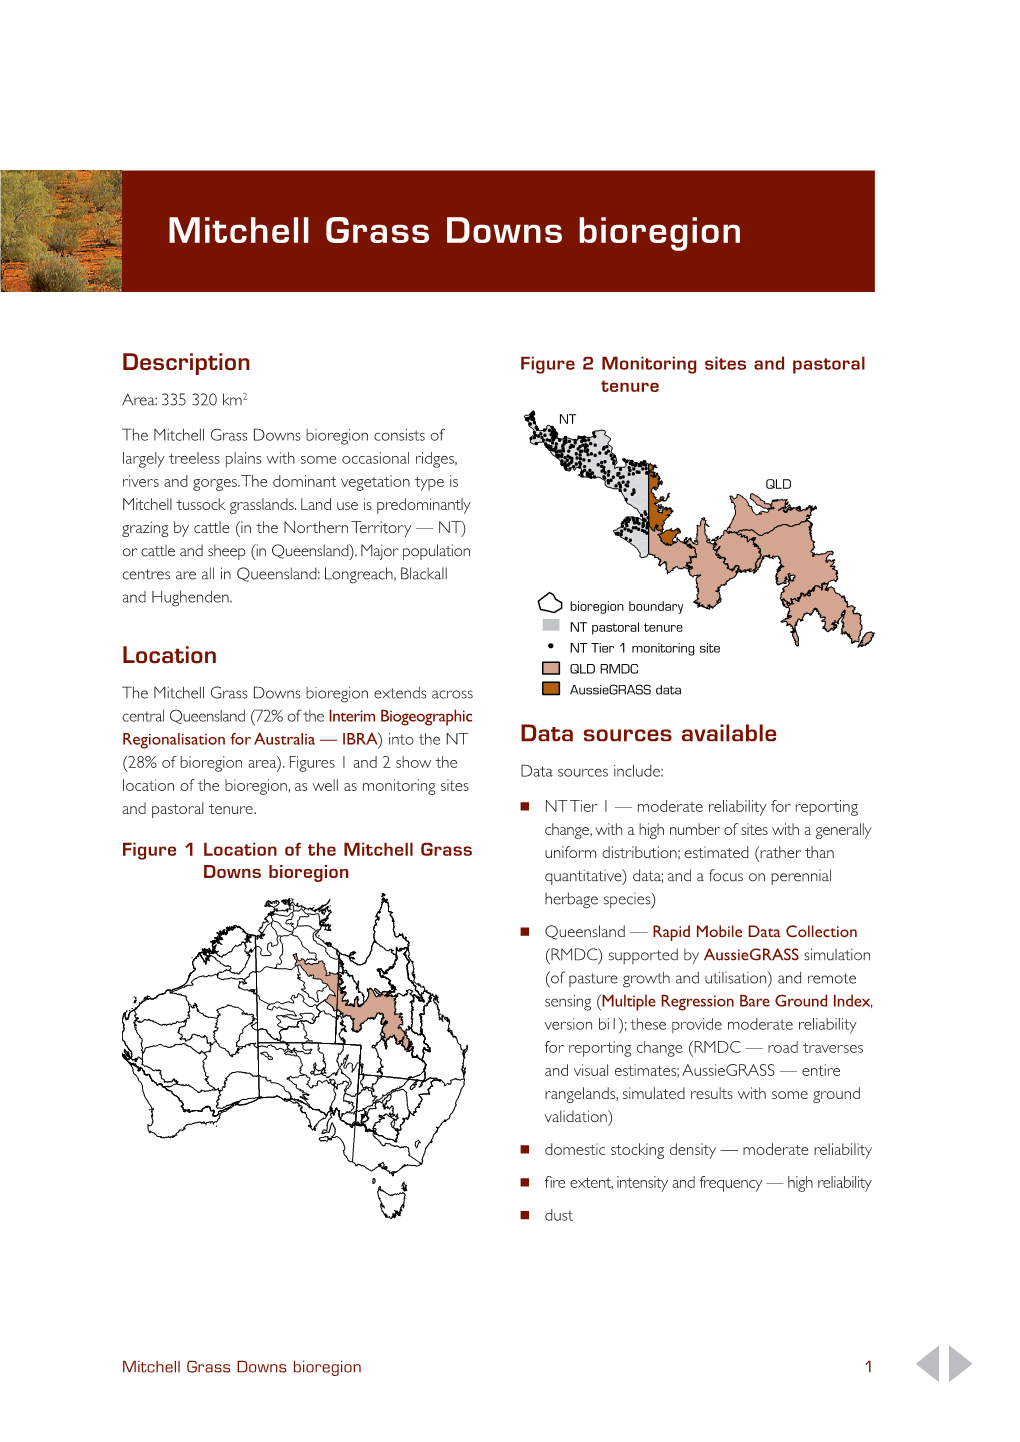 Mitchell Grass Downs Bioregion